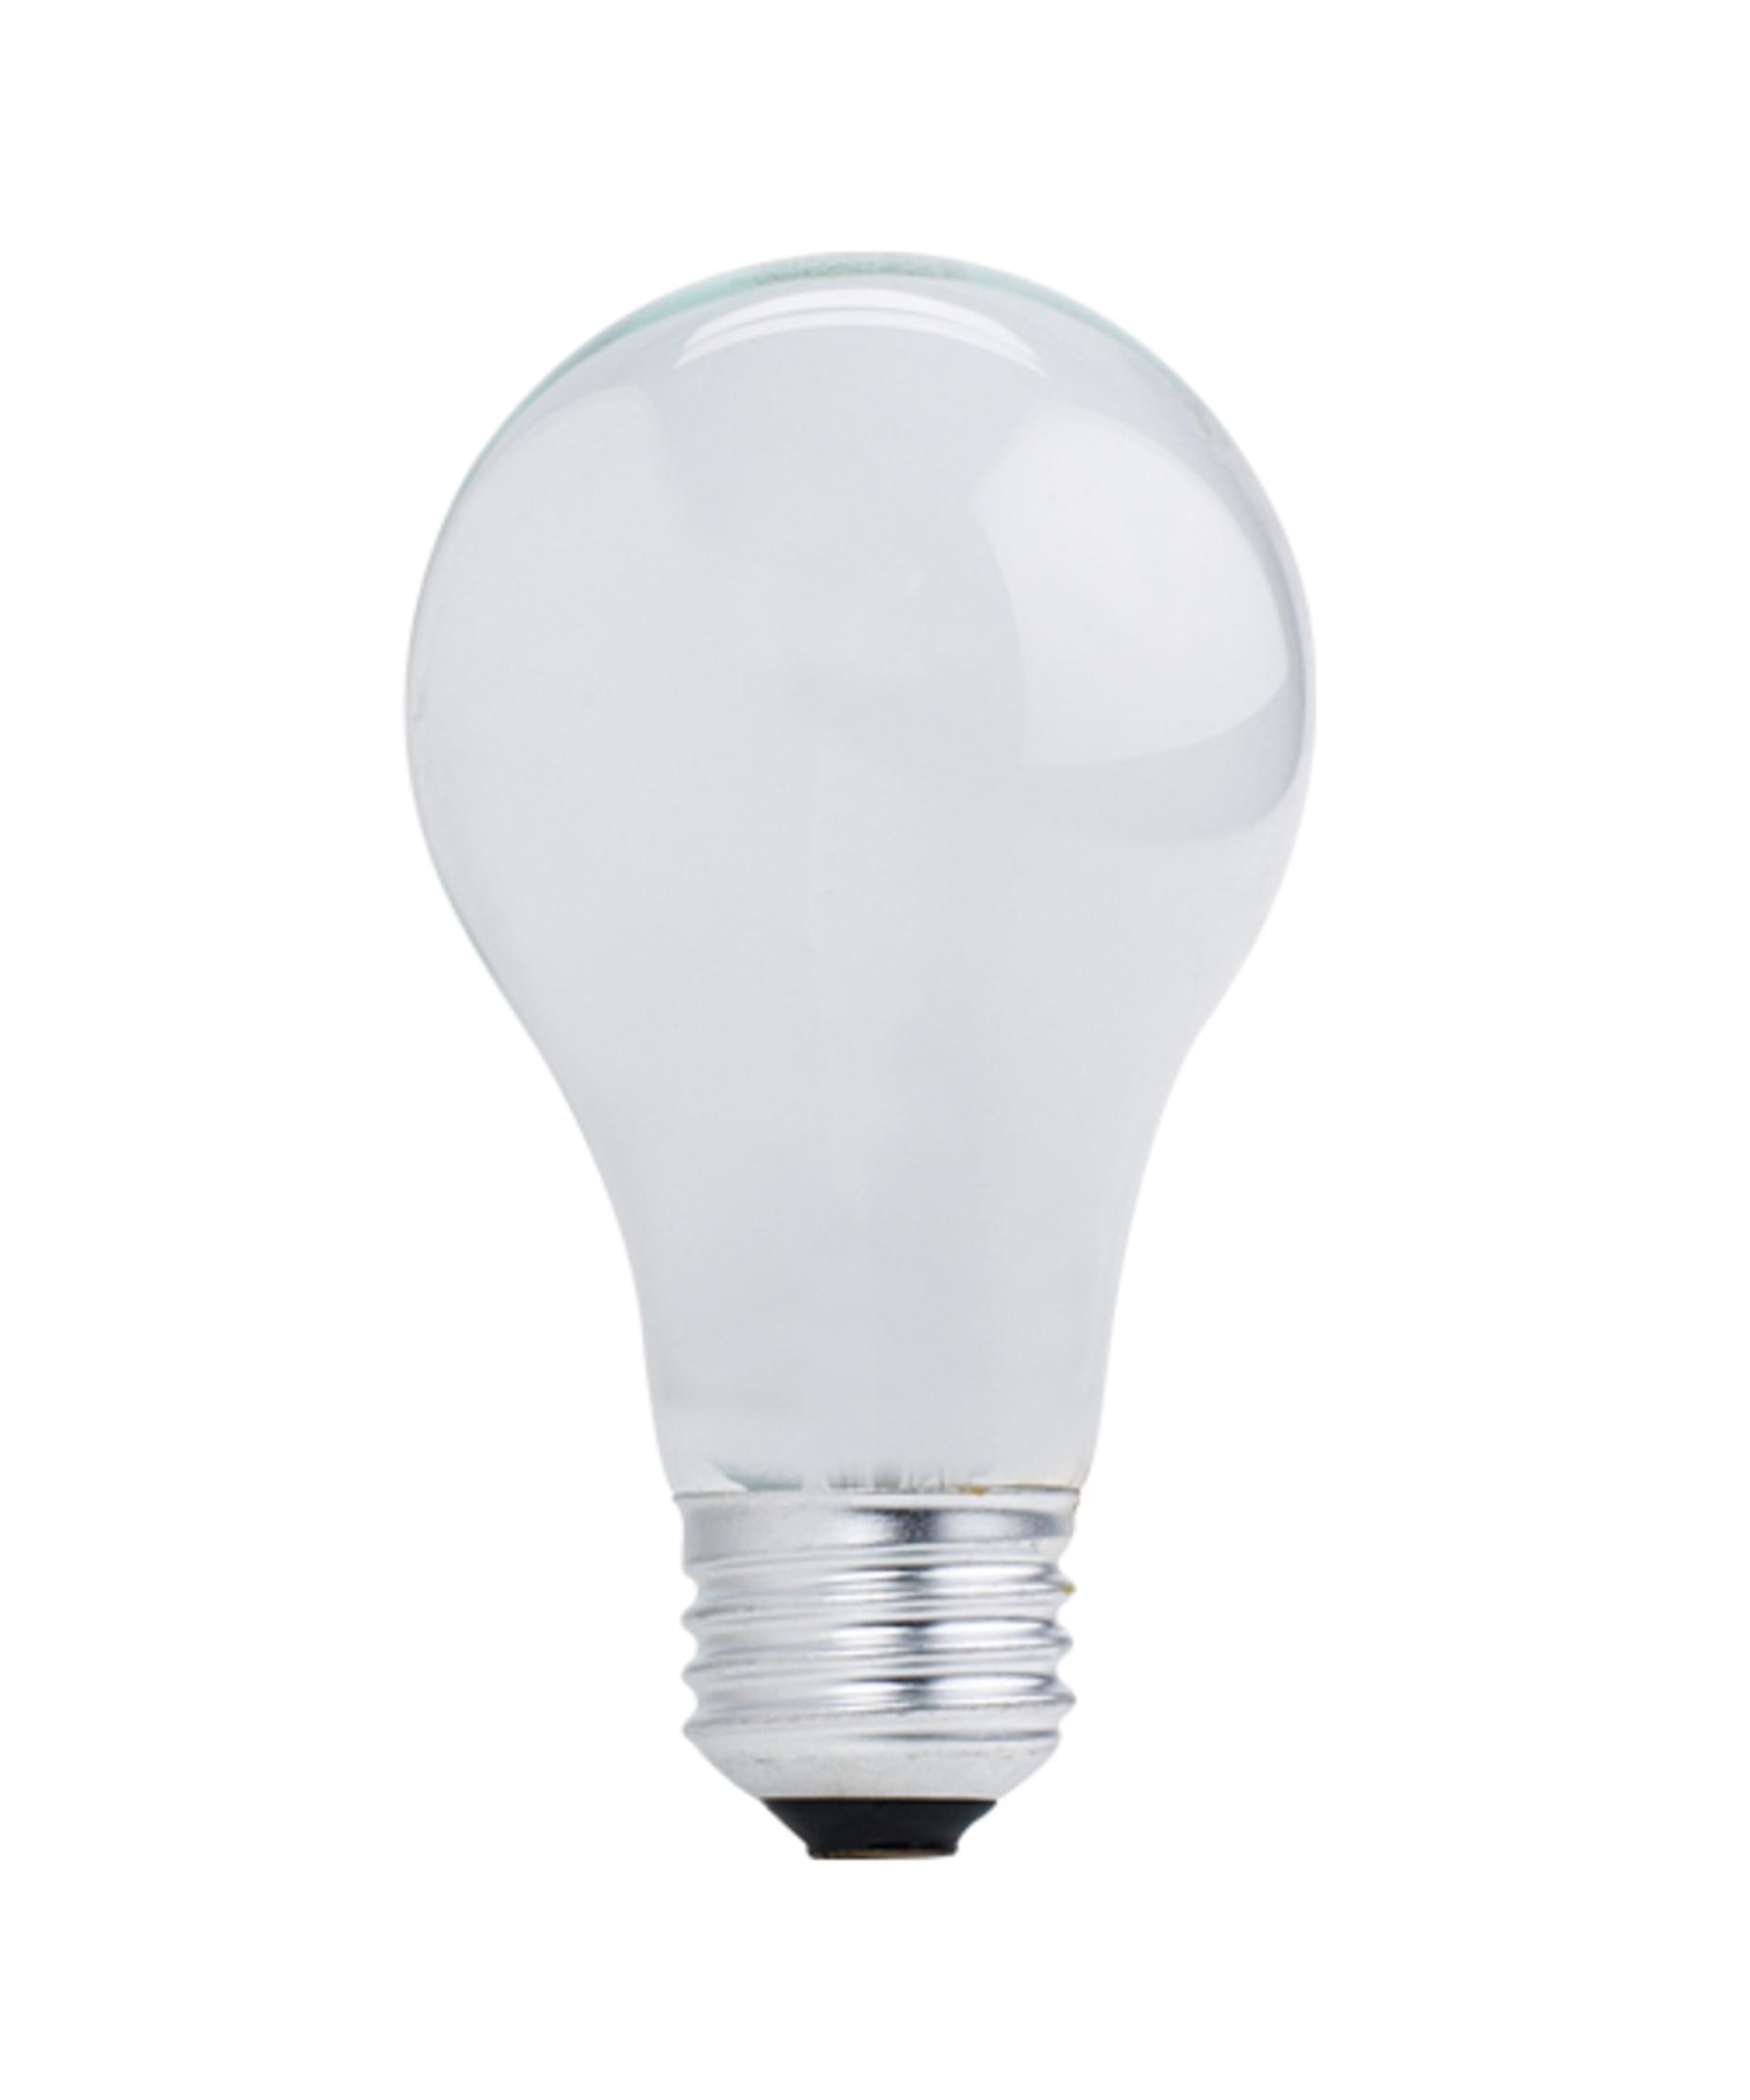 Bulbrite 72A19SW-ECO A19 Medium Base (E26) 72W Halogen Light Bulb ...